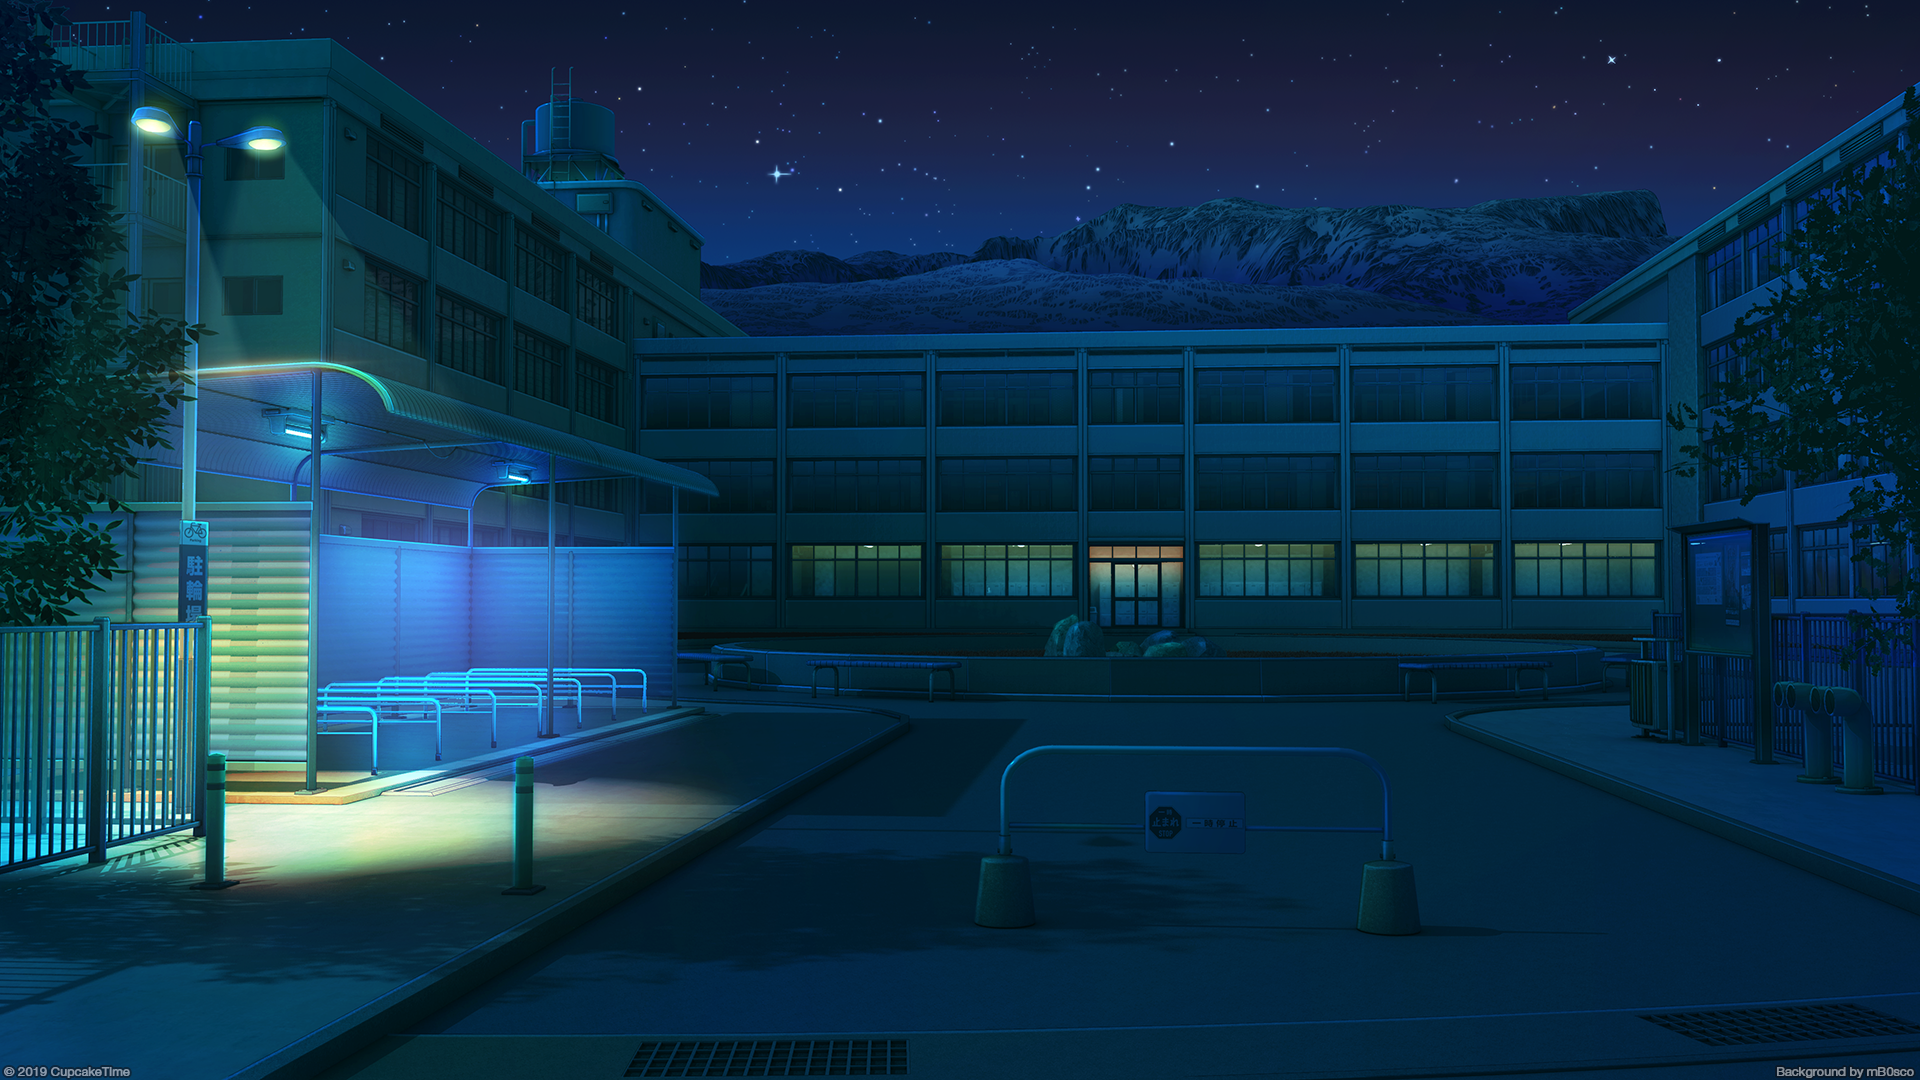 Hình nền anime đêm (Anime night HD Wallpaper background): Mời bạn đến với bức hình nền anime đêm đầy màu sắc và phong cách. Được thiết kế chuyên nghiệp với độ phân giải cao, hình nền sẽ mang đến cho bạn trải nghiệm thú vị và ấn tượng đẹp mắt khi sử dụng trên máy tính của mình.